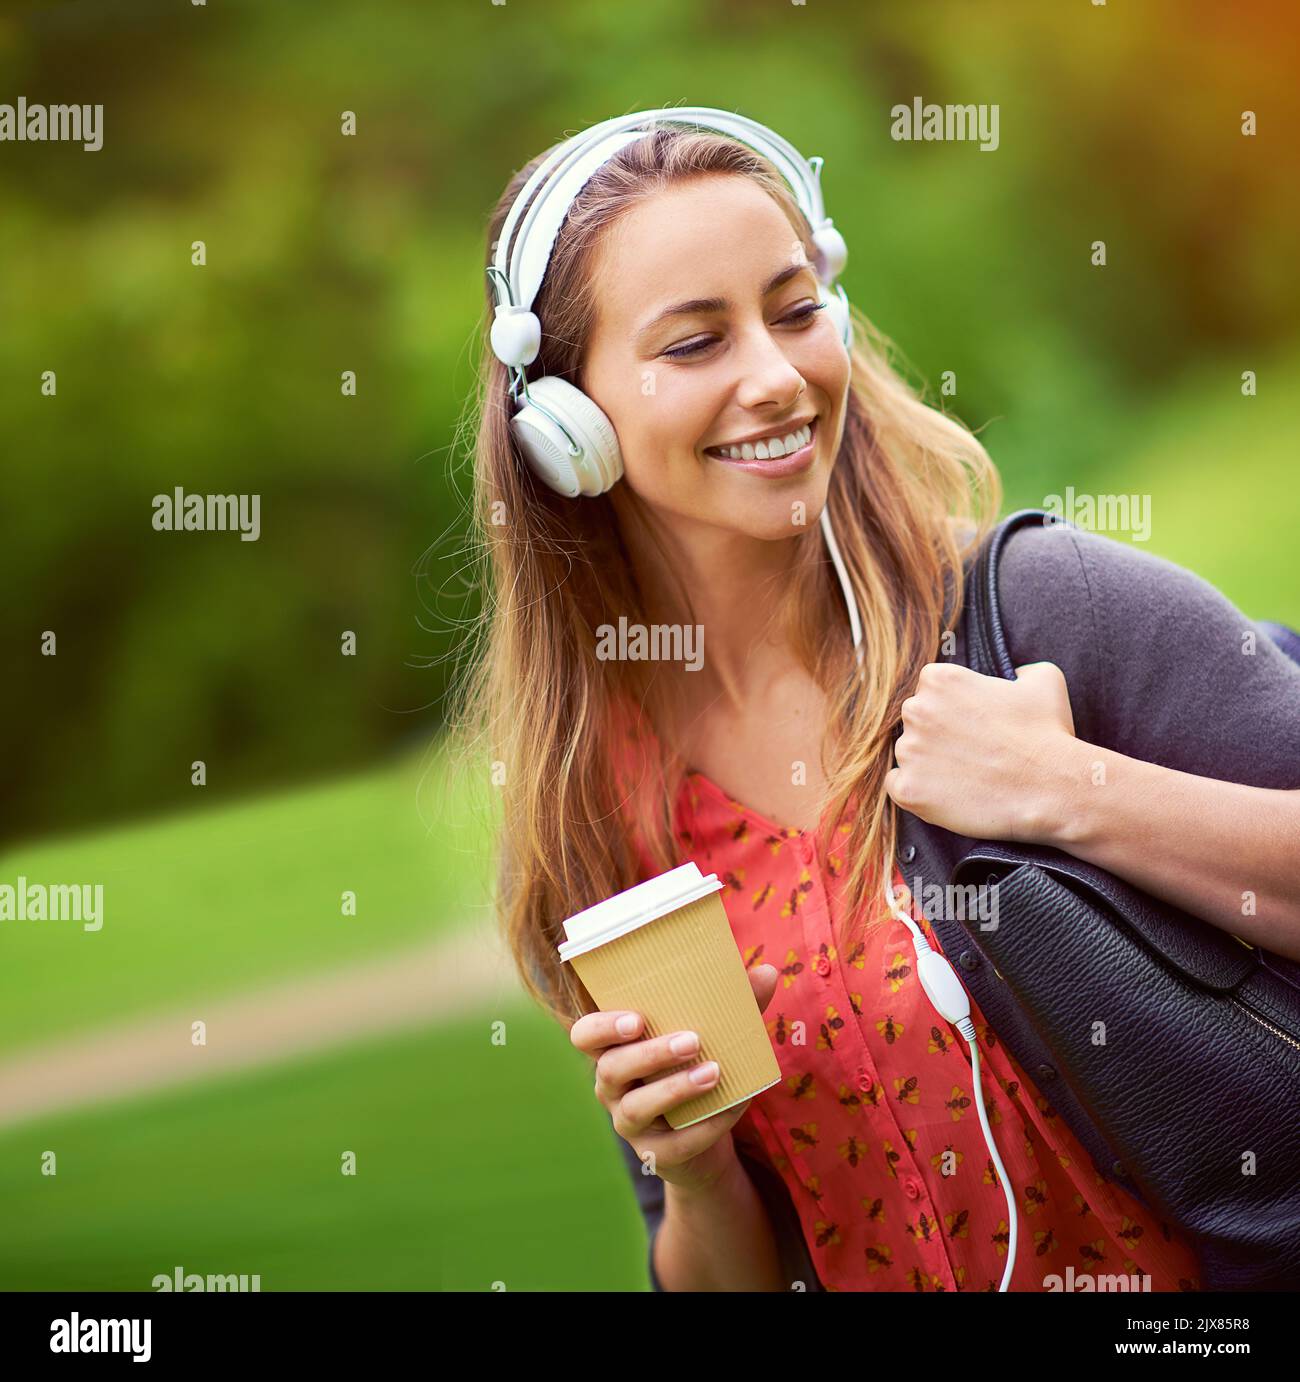 Ein Spaziergang durch den Park mit ihrem Kaffee und ihrer Musik. Eine junge Frau, die Musik hört, während sie unterwegs einen Kaffee trinken. Stockfoto